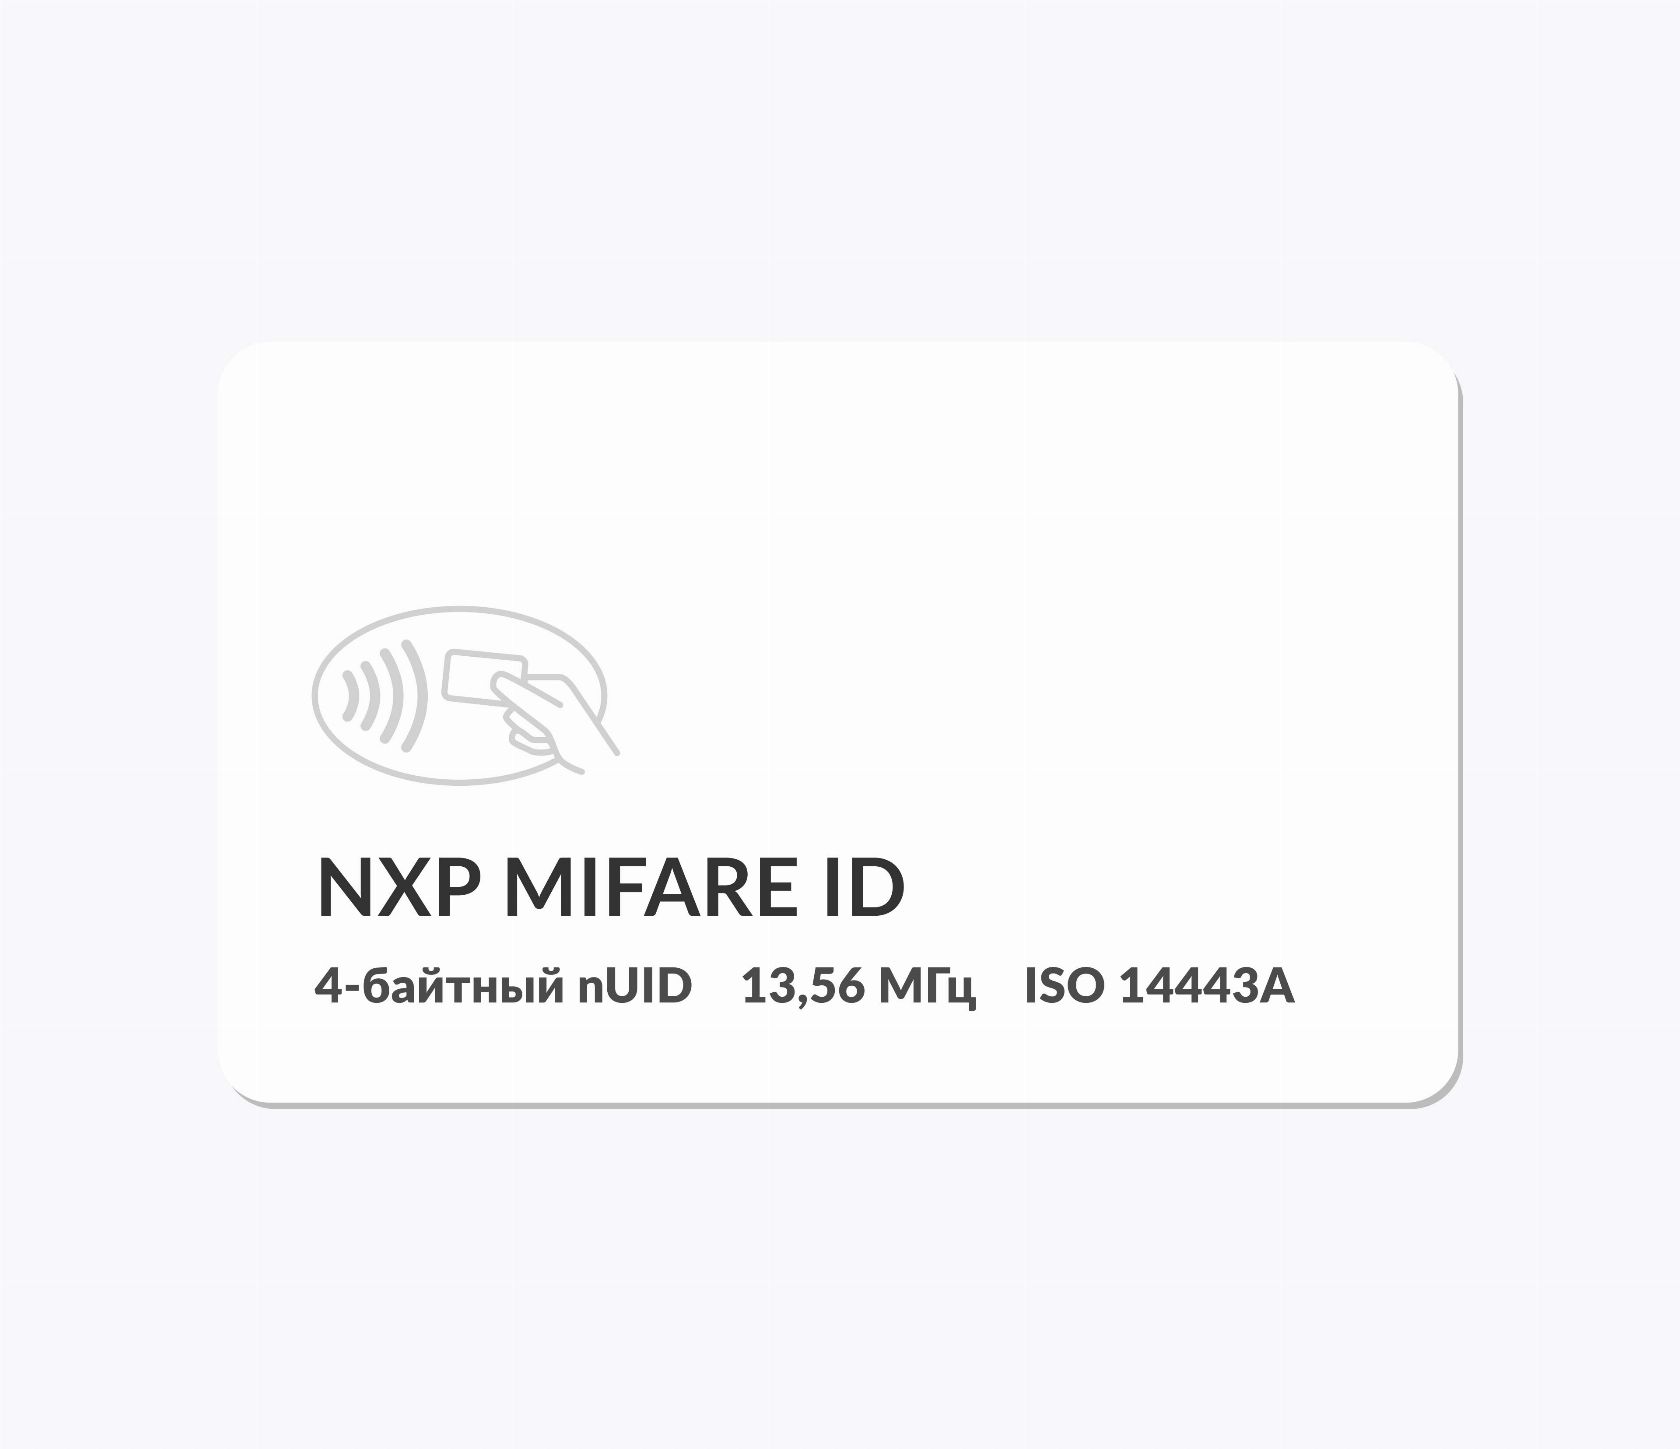 RFID-карты с чипом NXP MIFARE ID 4 byte nUID RFID-карты с чипом NXP MIFARE ID 4 byte nUID